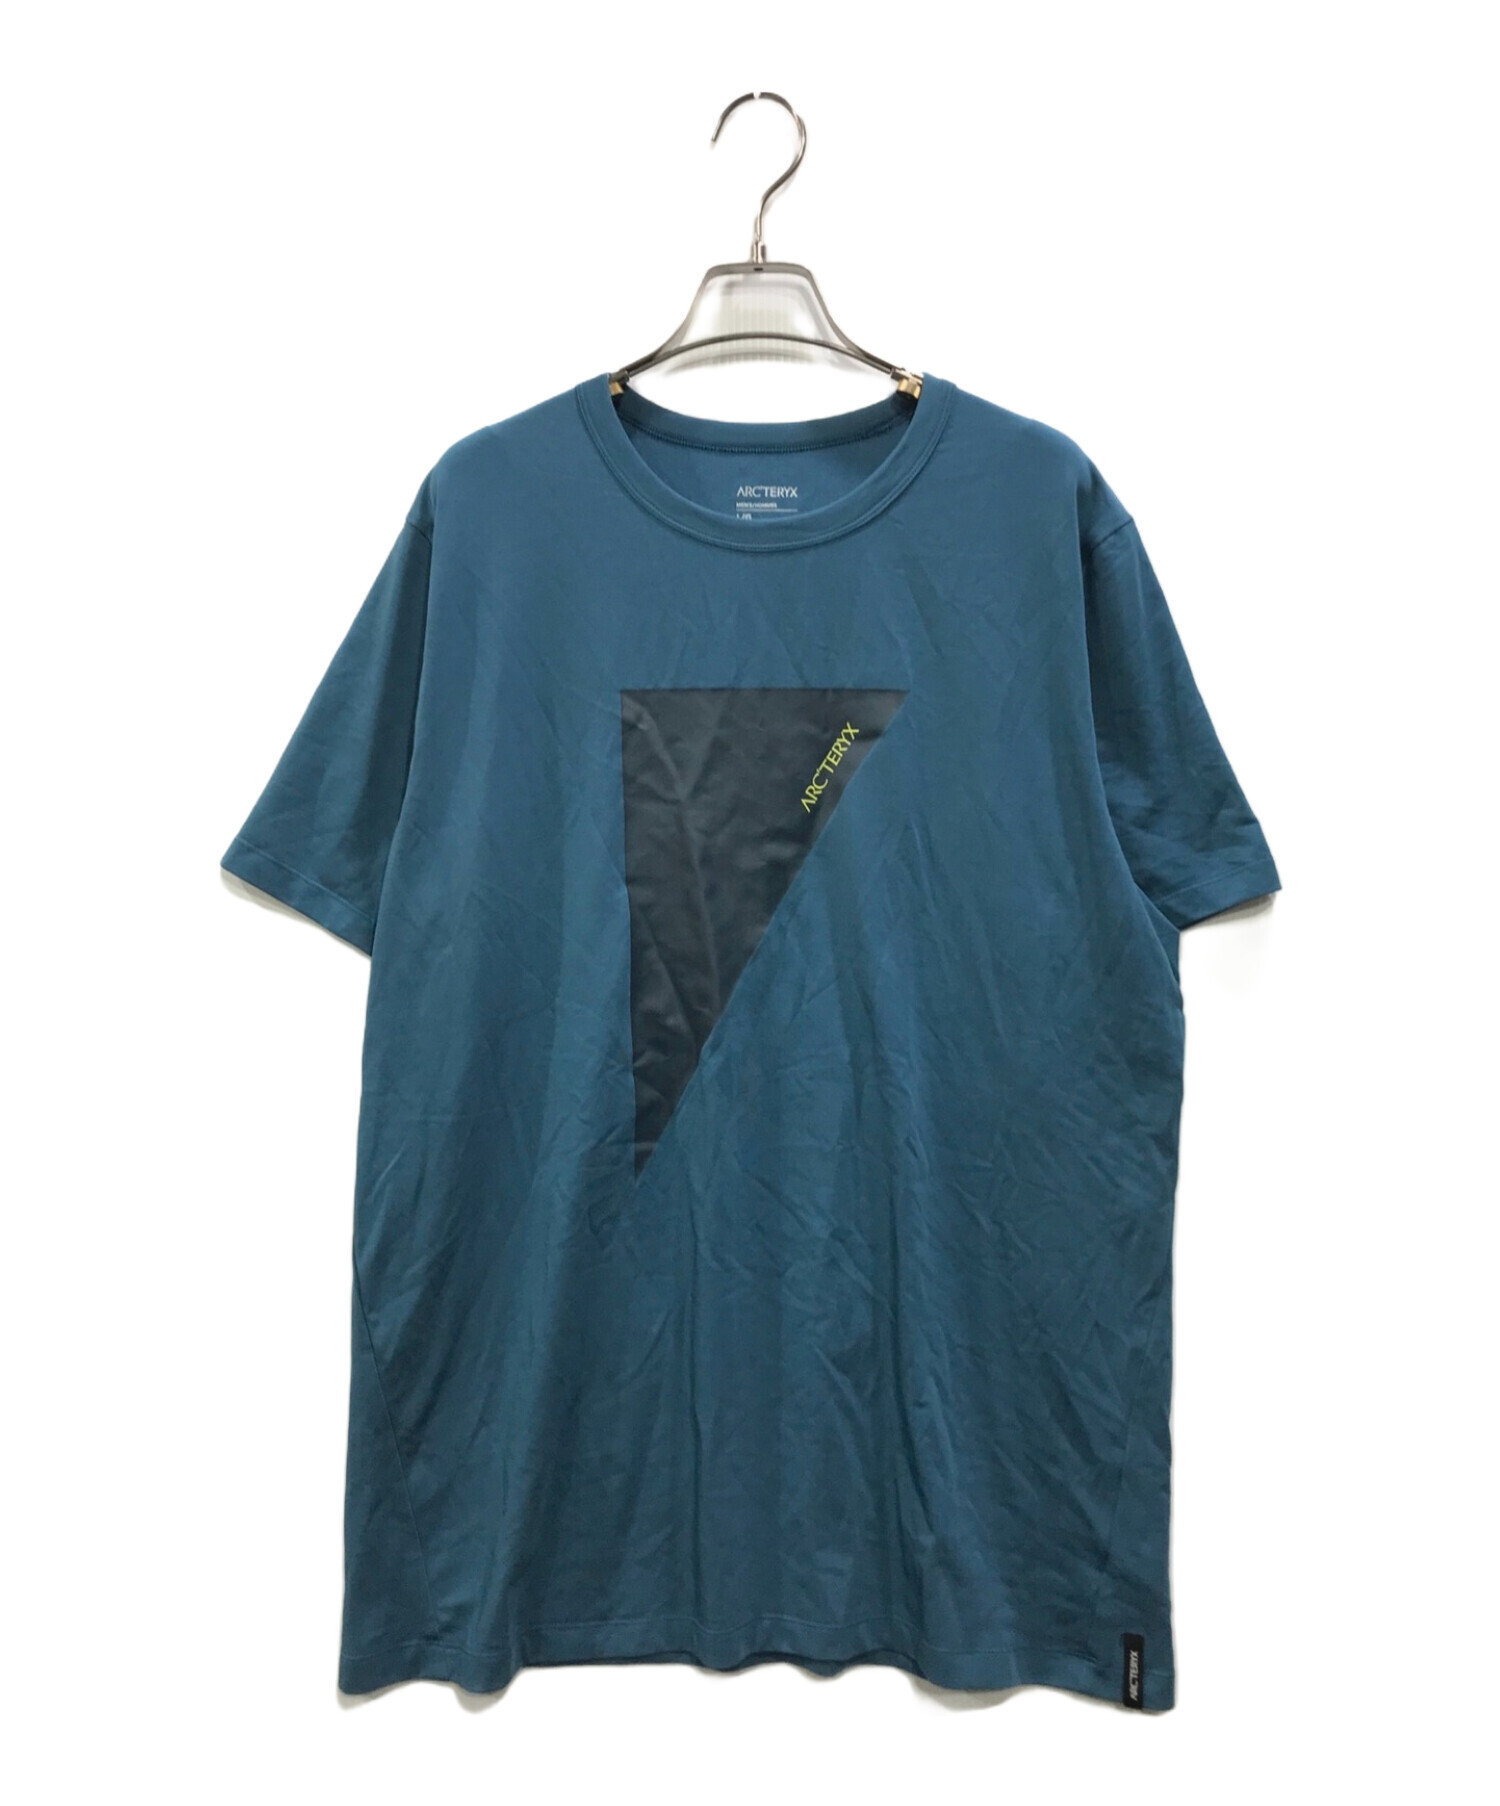 ARC'TERYX (アークテリクス) キャプティブ アークポストロフィー ワード Tシャツ ブルー サイズ:L